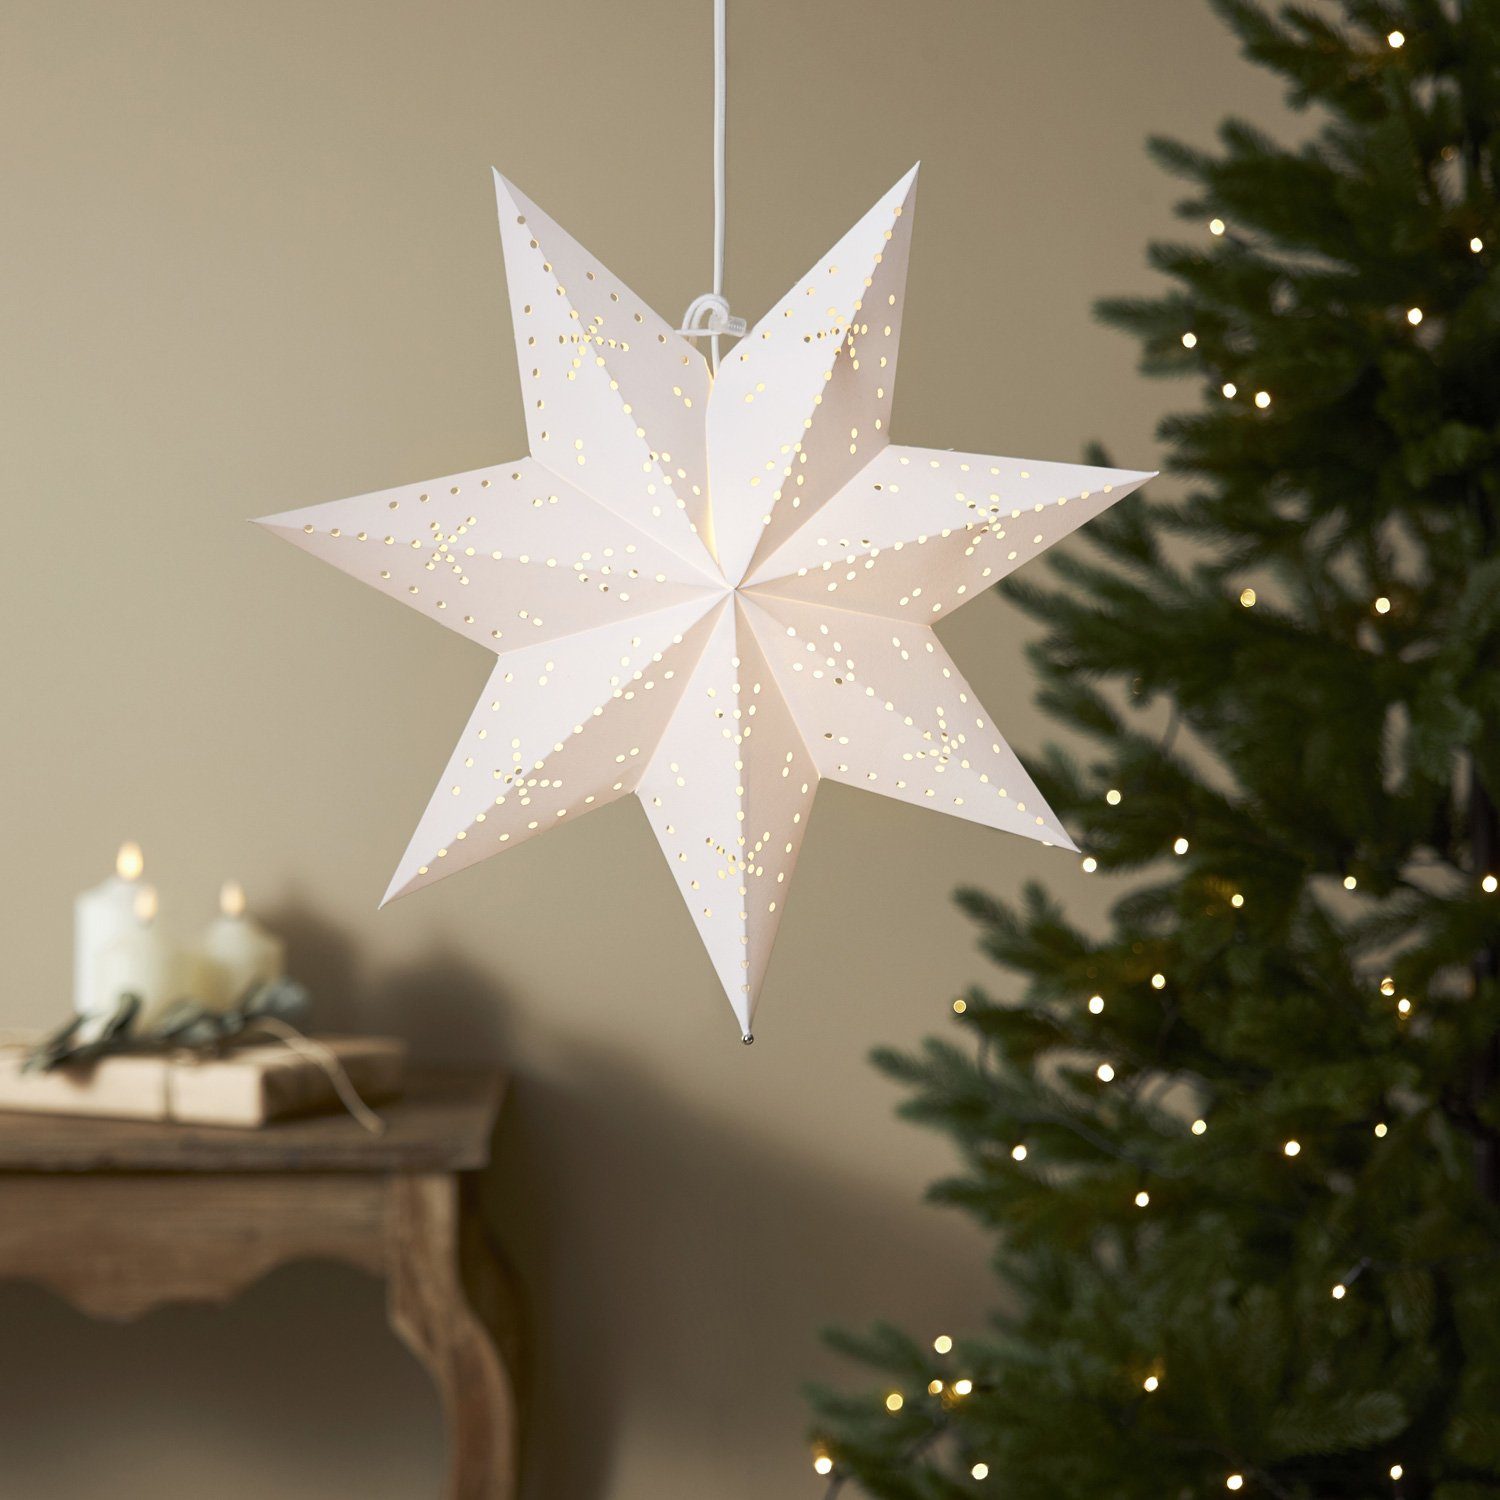 MARELIDA LED Stern Papierstern Leuchtstern Weihnachtsstern Faltstern 45cm mit Kabel weiß